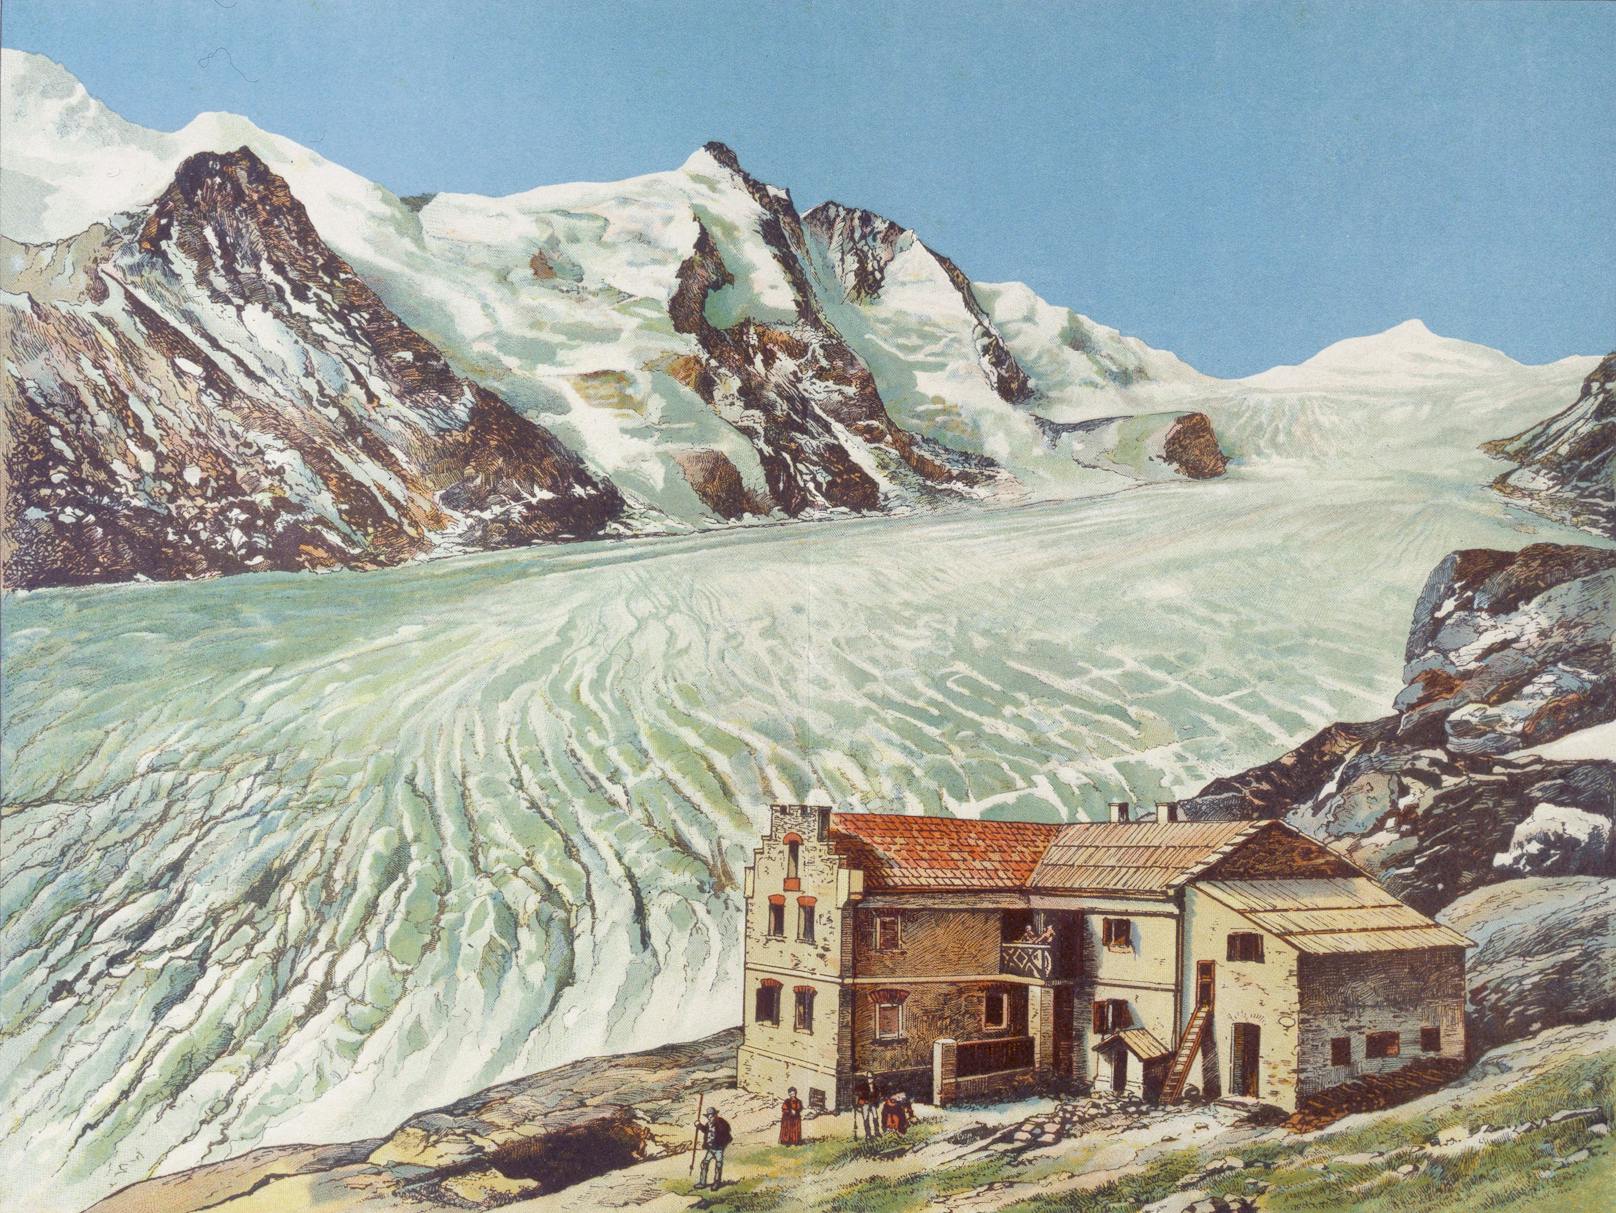 So kennt kein lebender Mensch mehr die Pasterze. Die Farblithographie entstand um <strong>1880</strong> und zeigt den riesigen Gletscher und das Glocknerhaus.